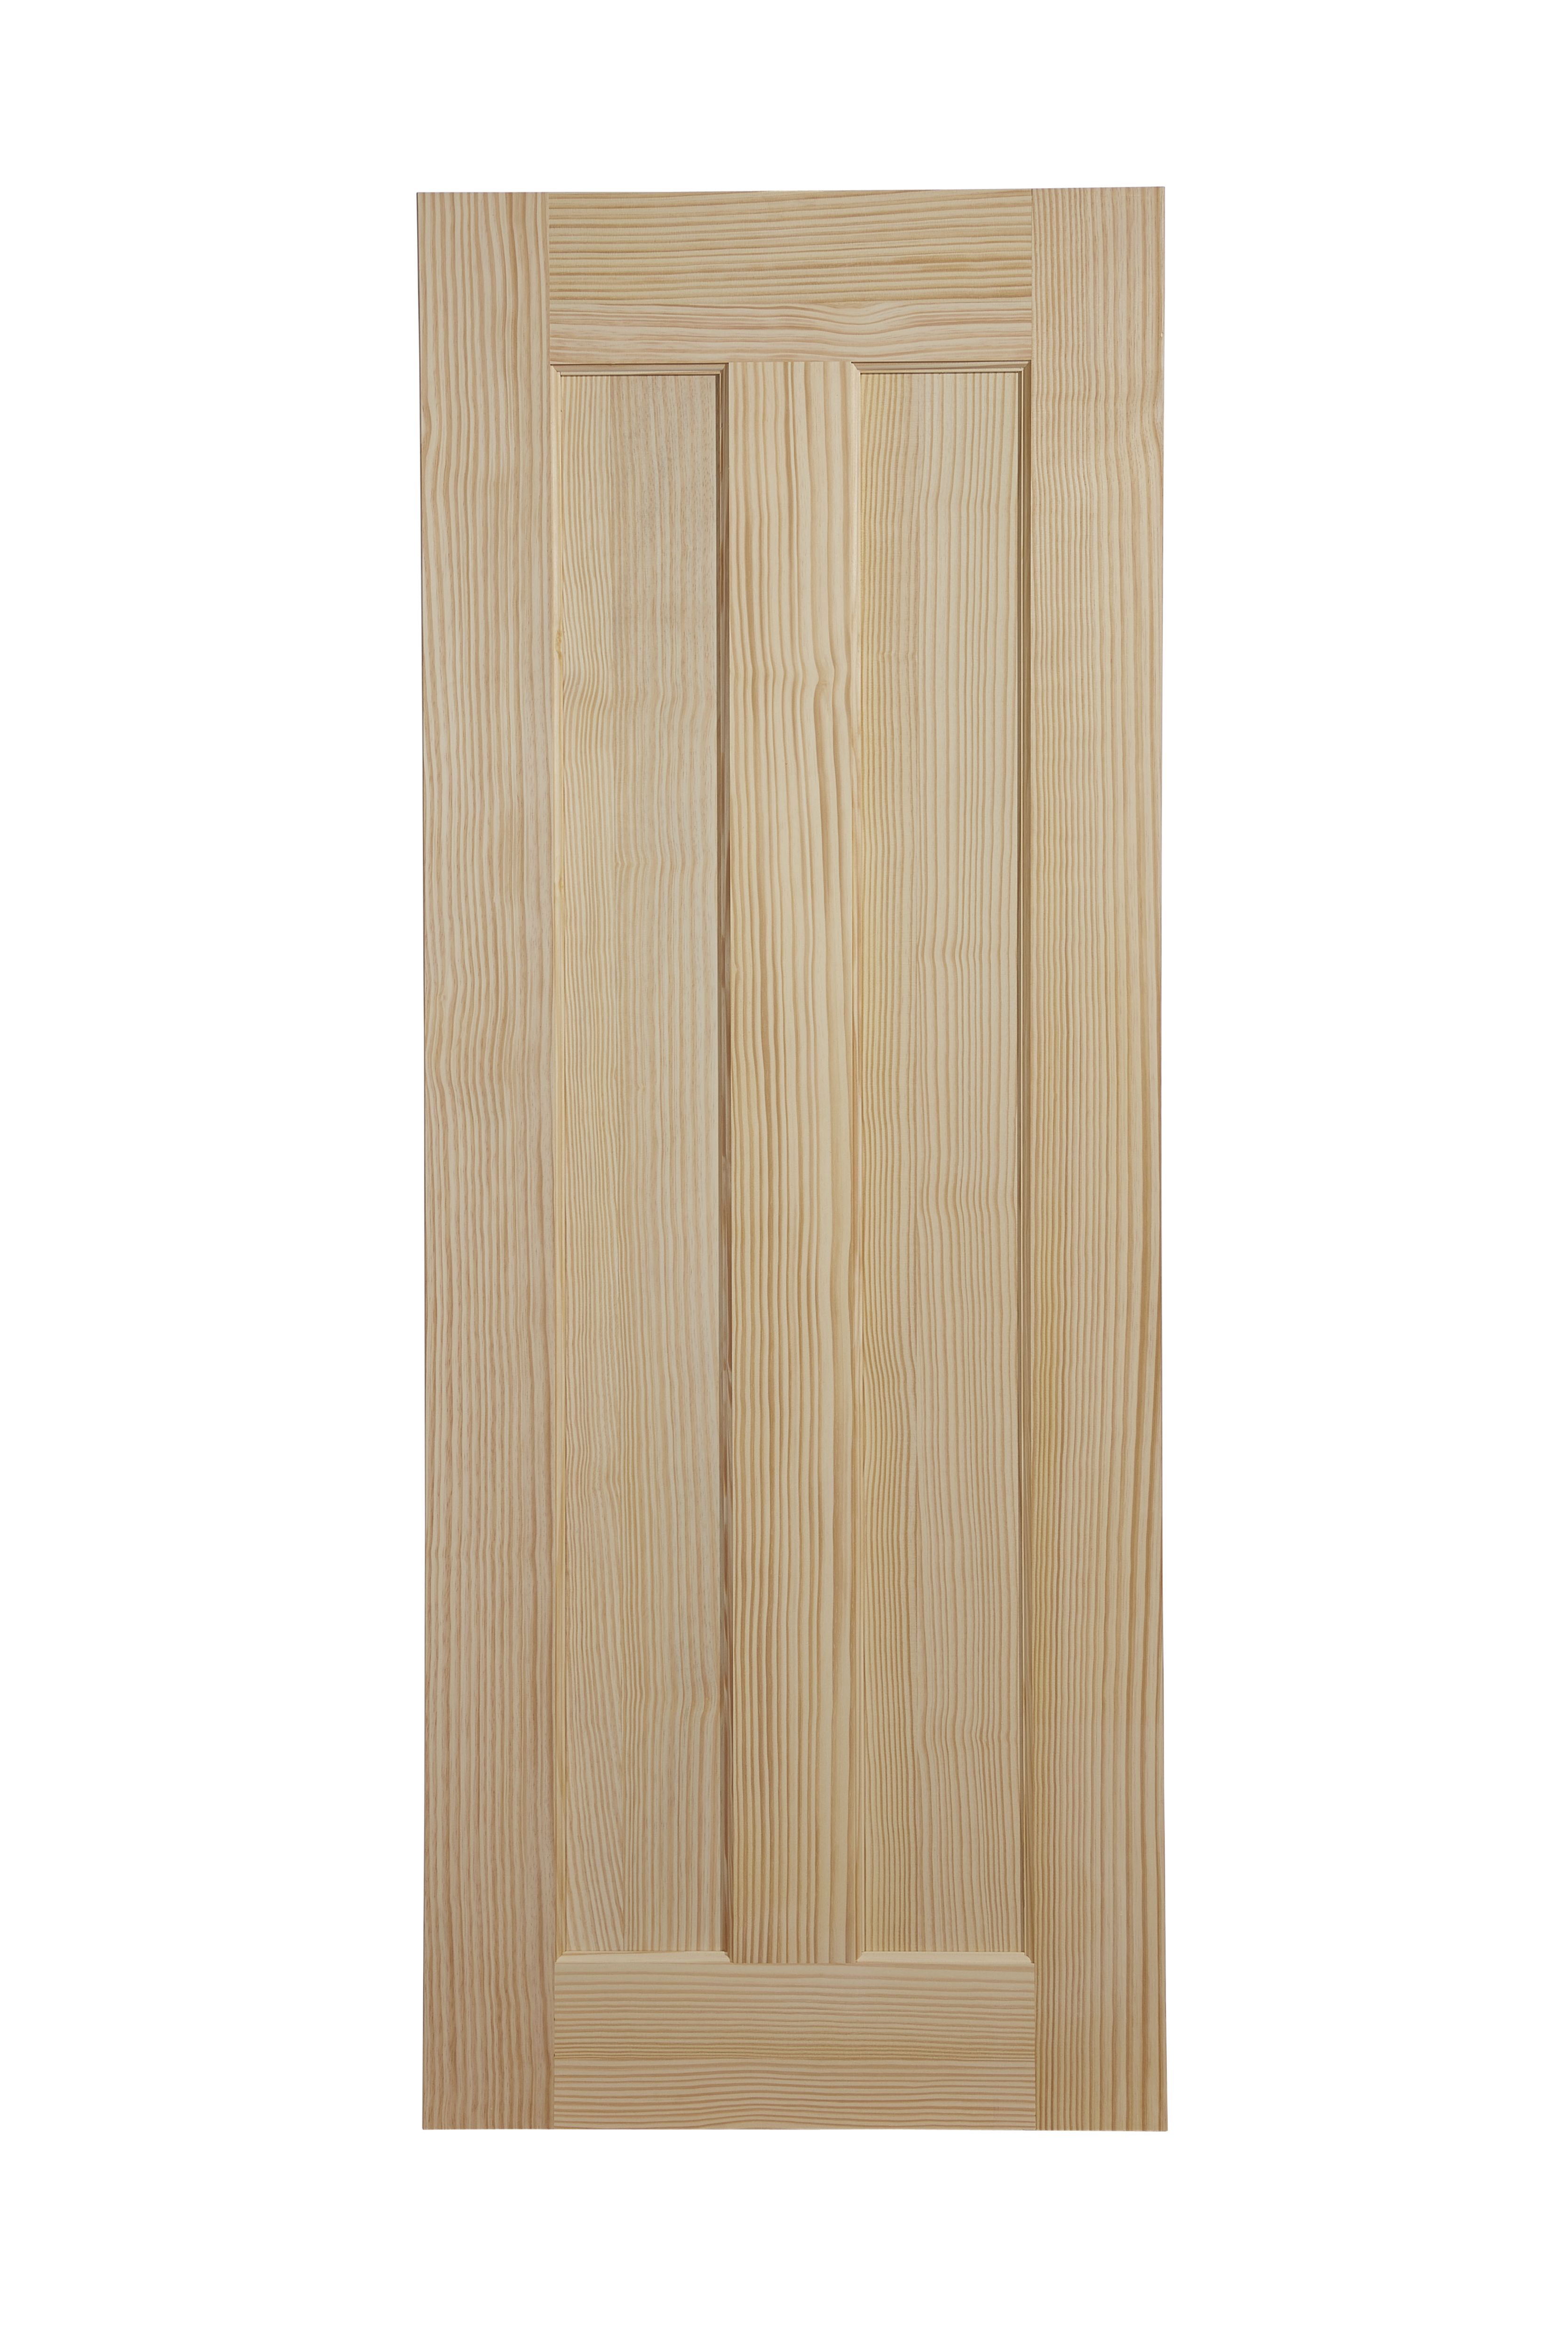 Vertical 2 panel Unglazed Contemporary Pine veneer Internal Clear pine Door, (H)1981mm (W)762mm (T)35mm